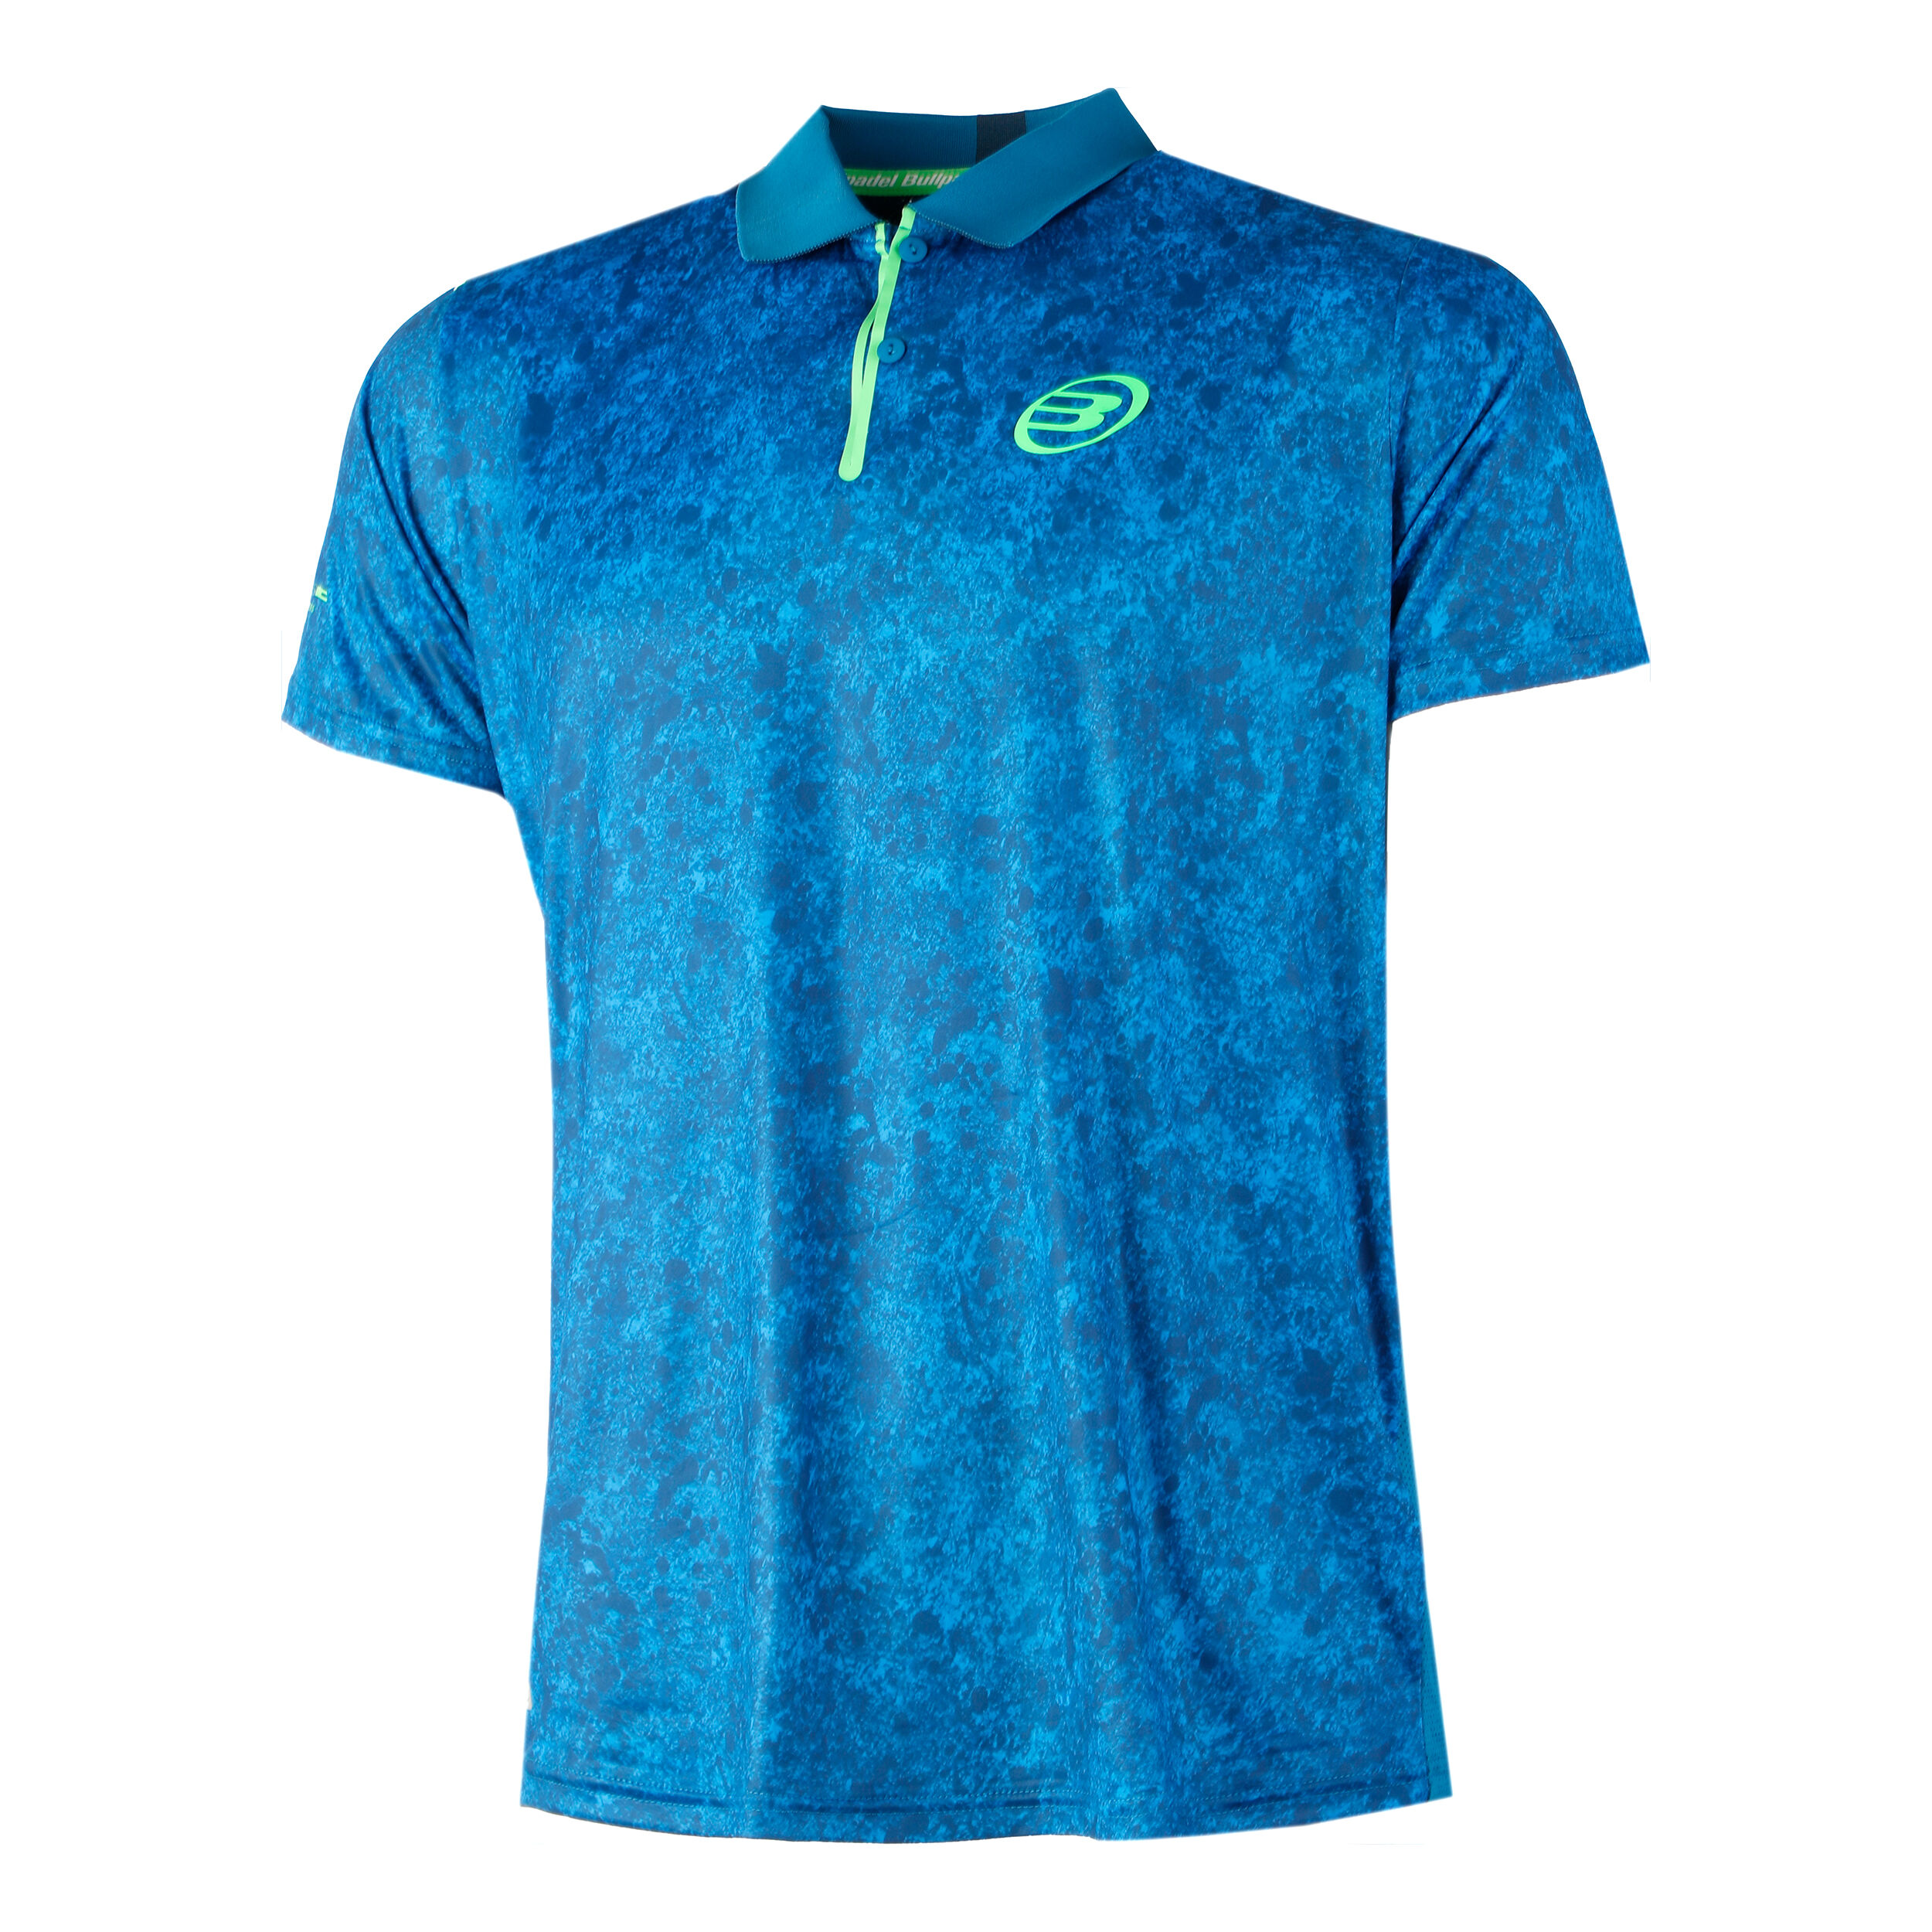 Funktionspoloshirt Shirt Poloshirt Kragen funktionell Tennis weiß XS 32/34 Neu!! 